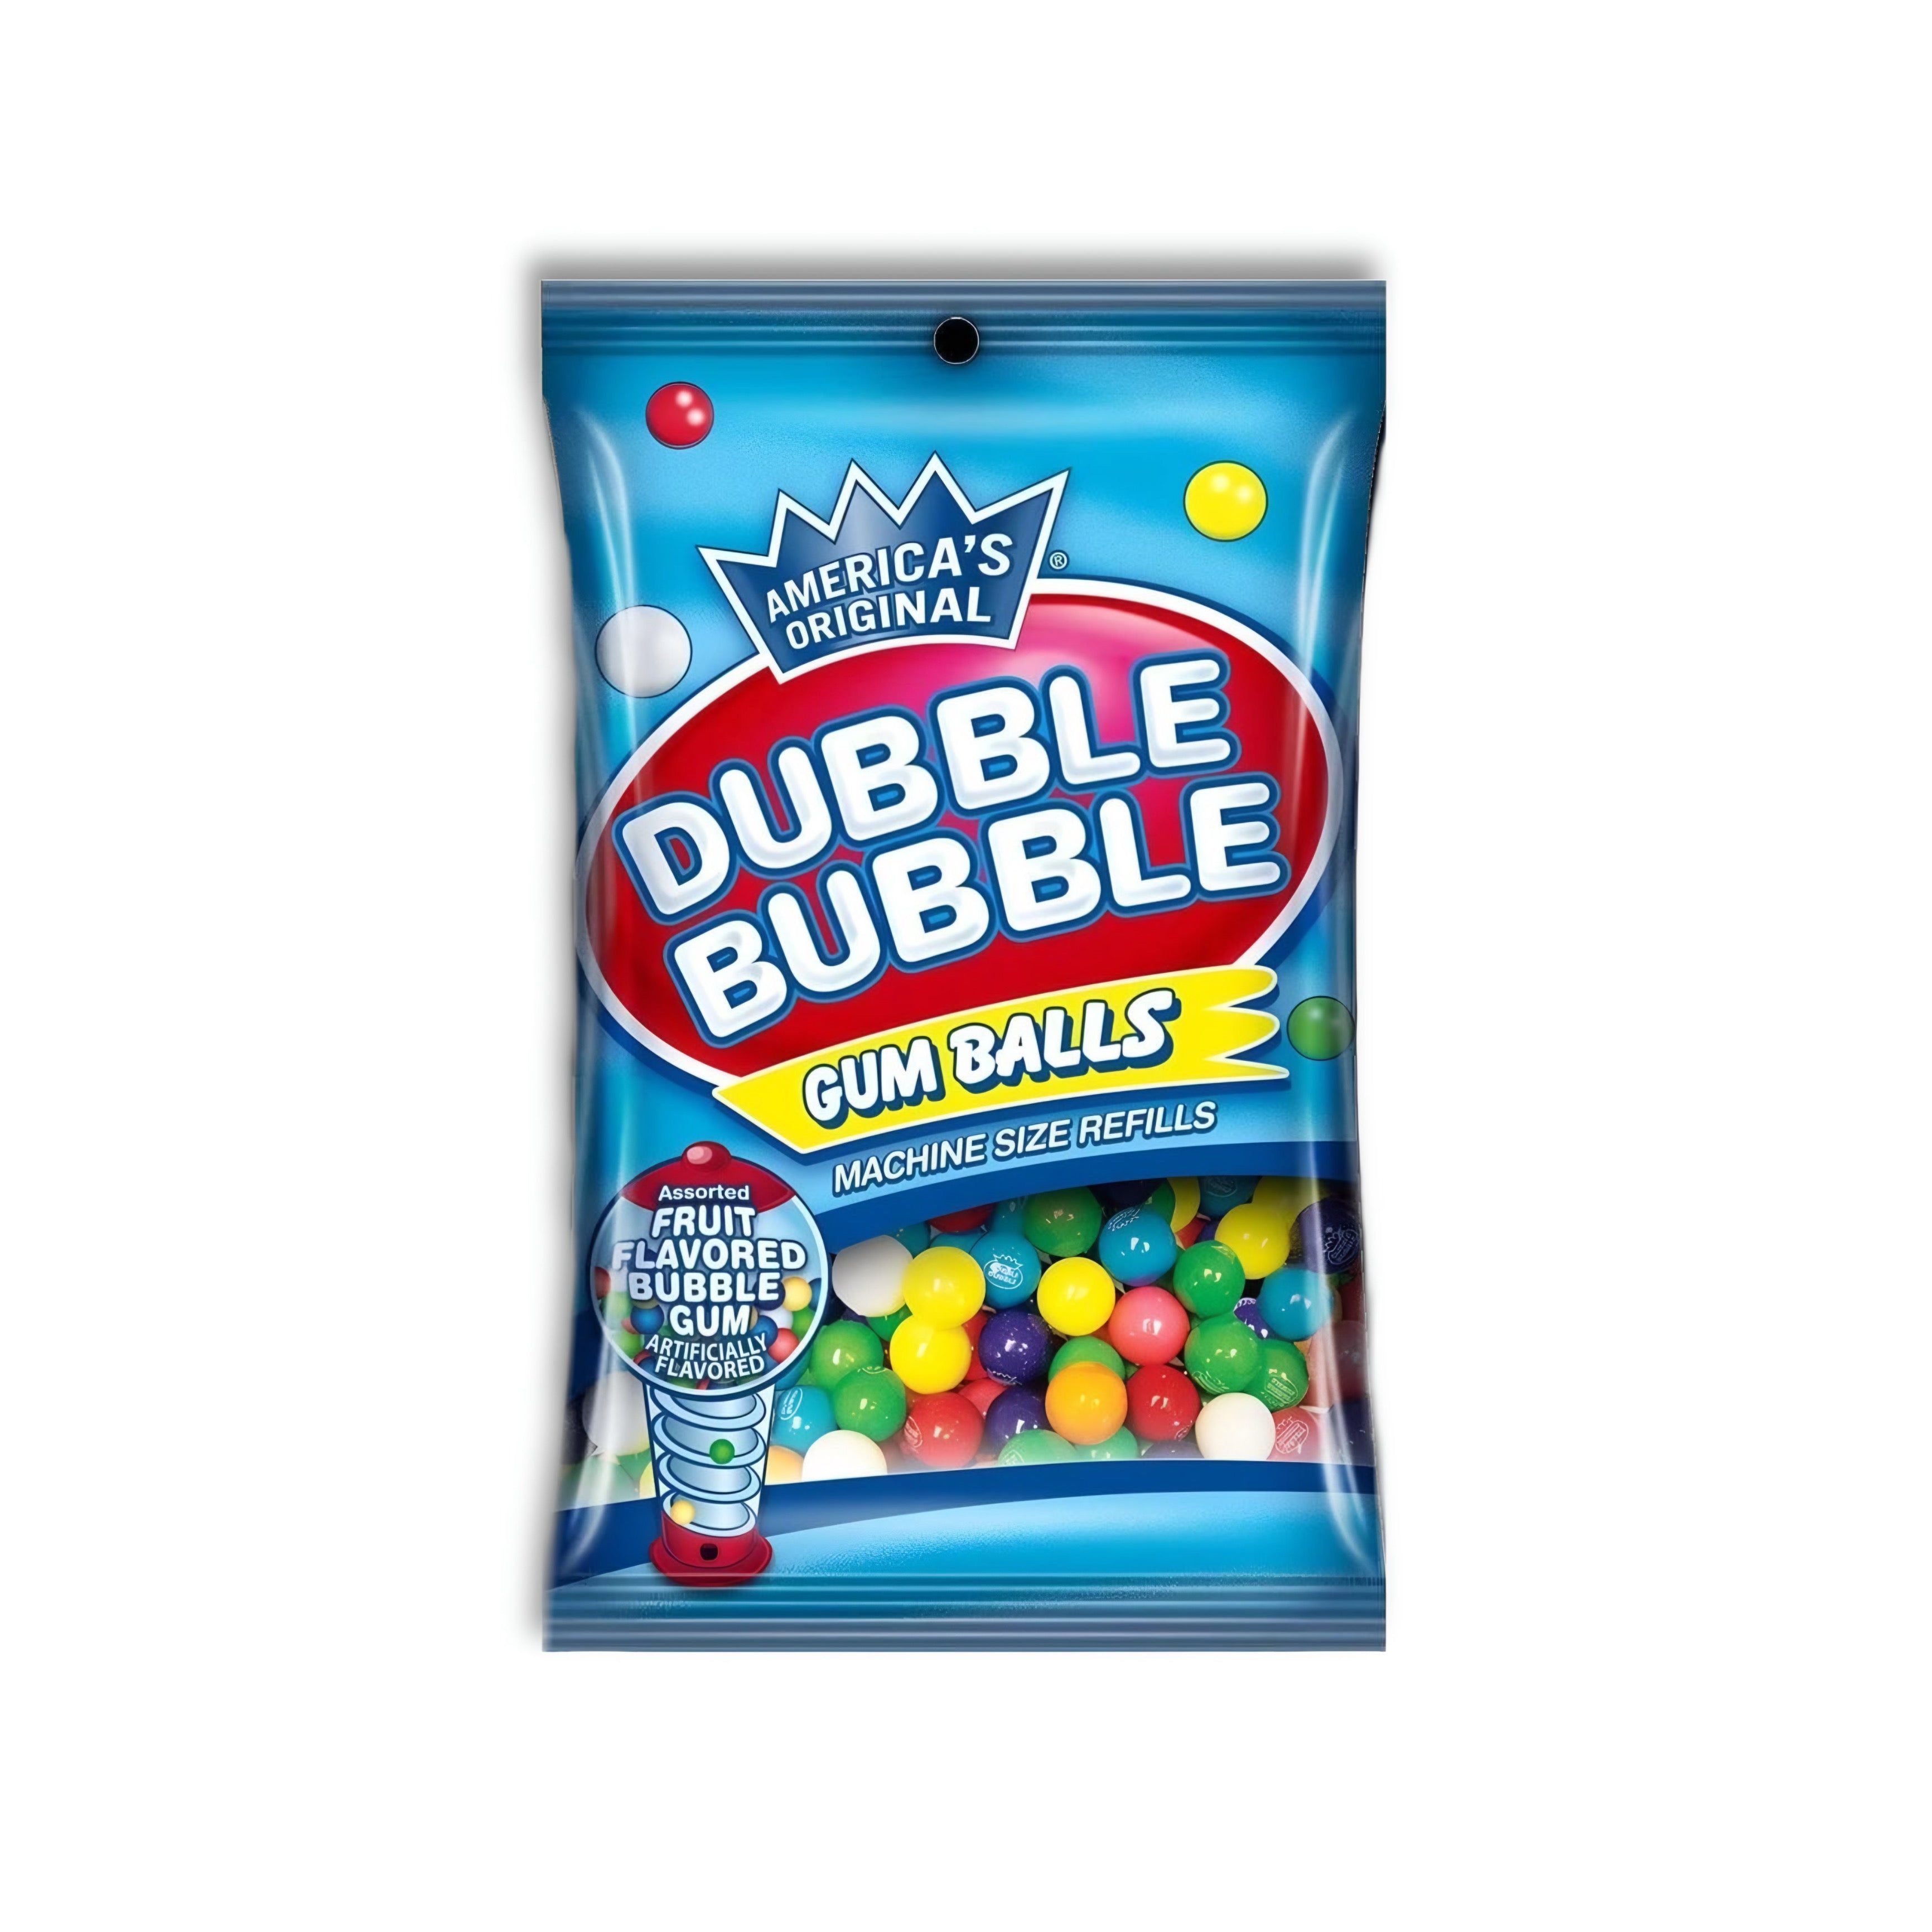 Dubble Bubble - Gum Balls